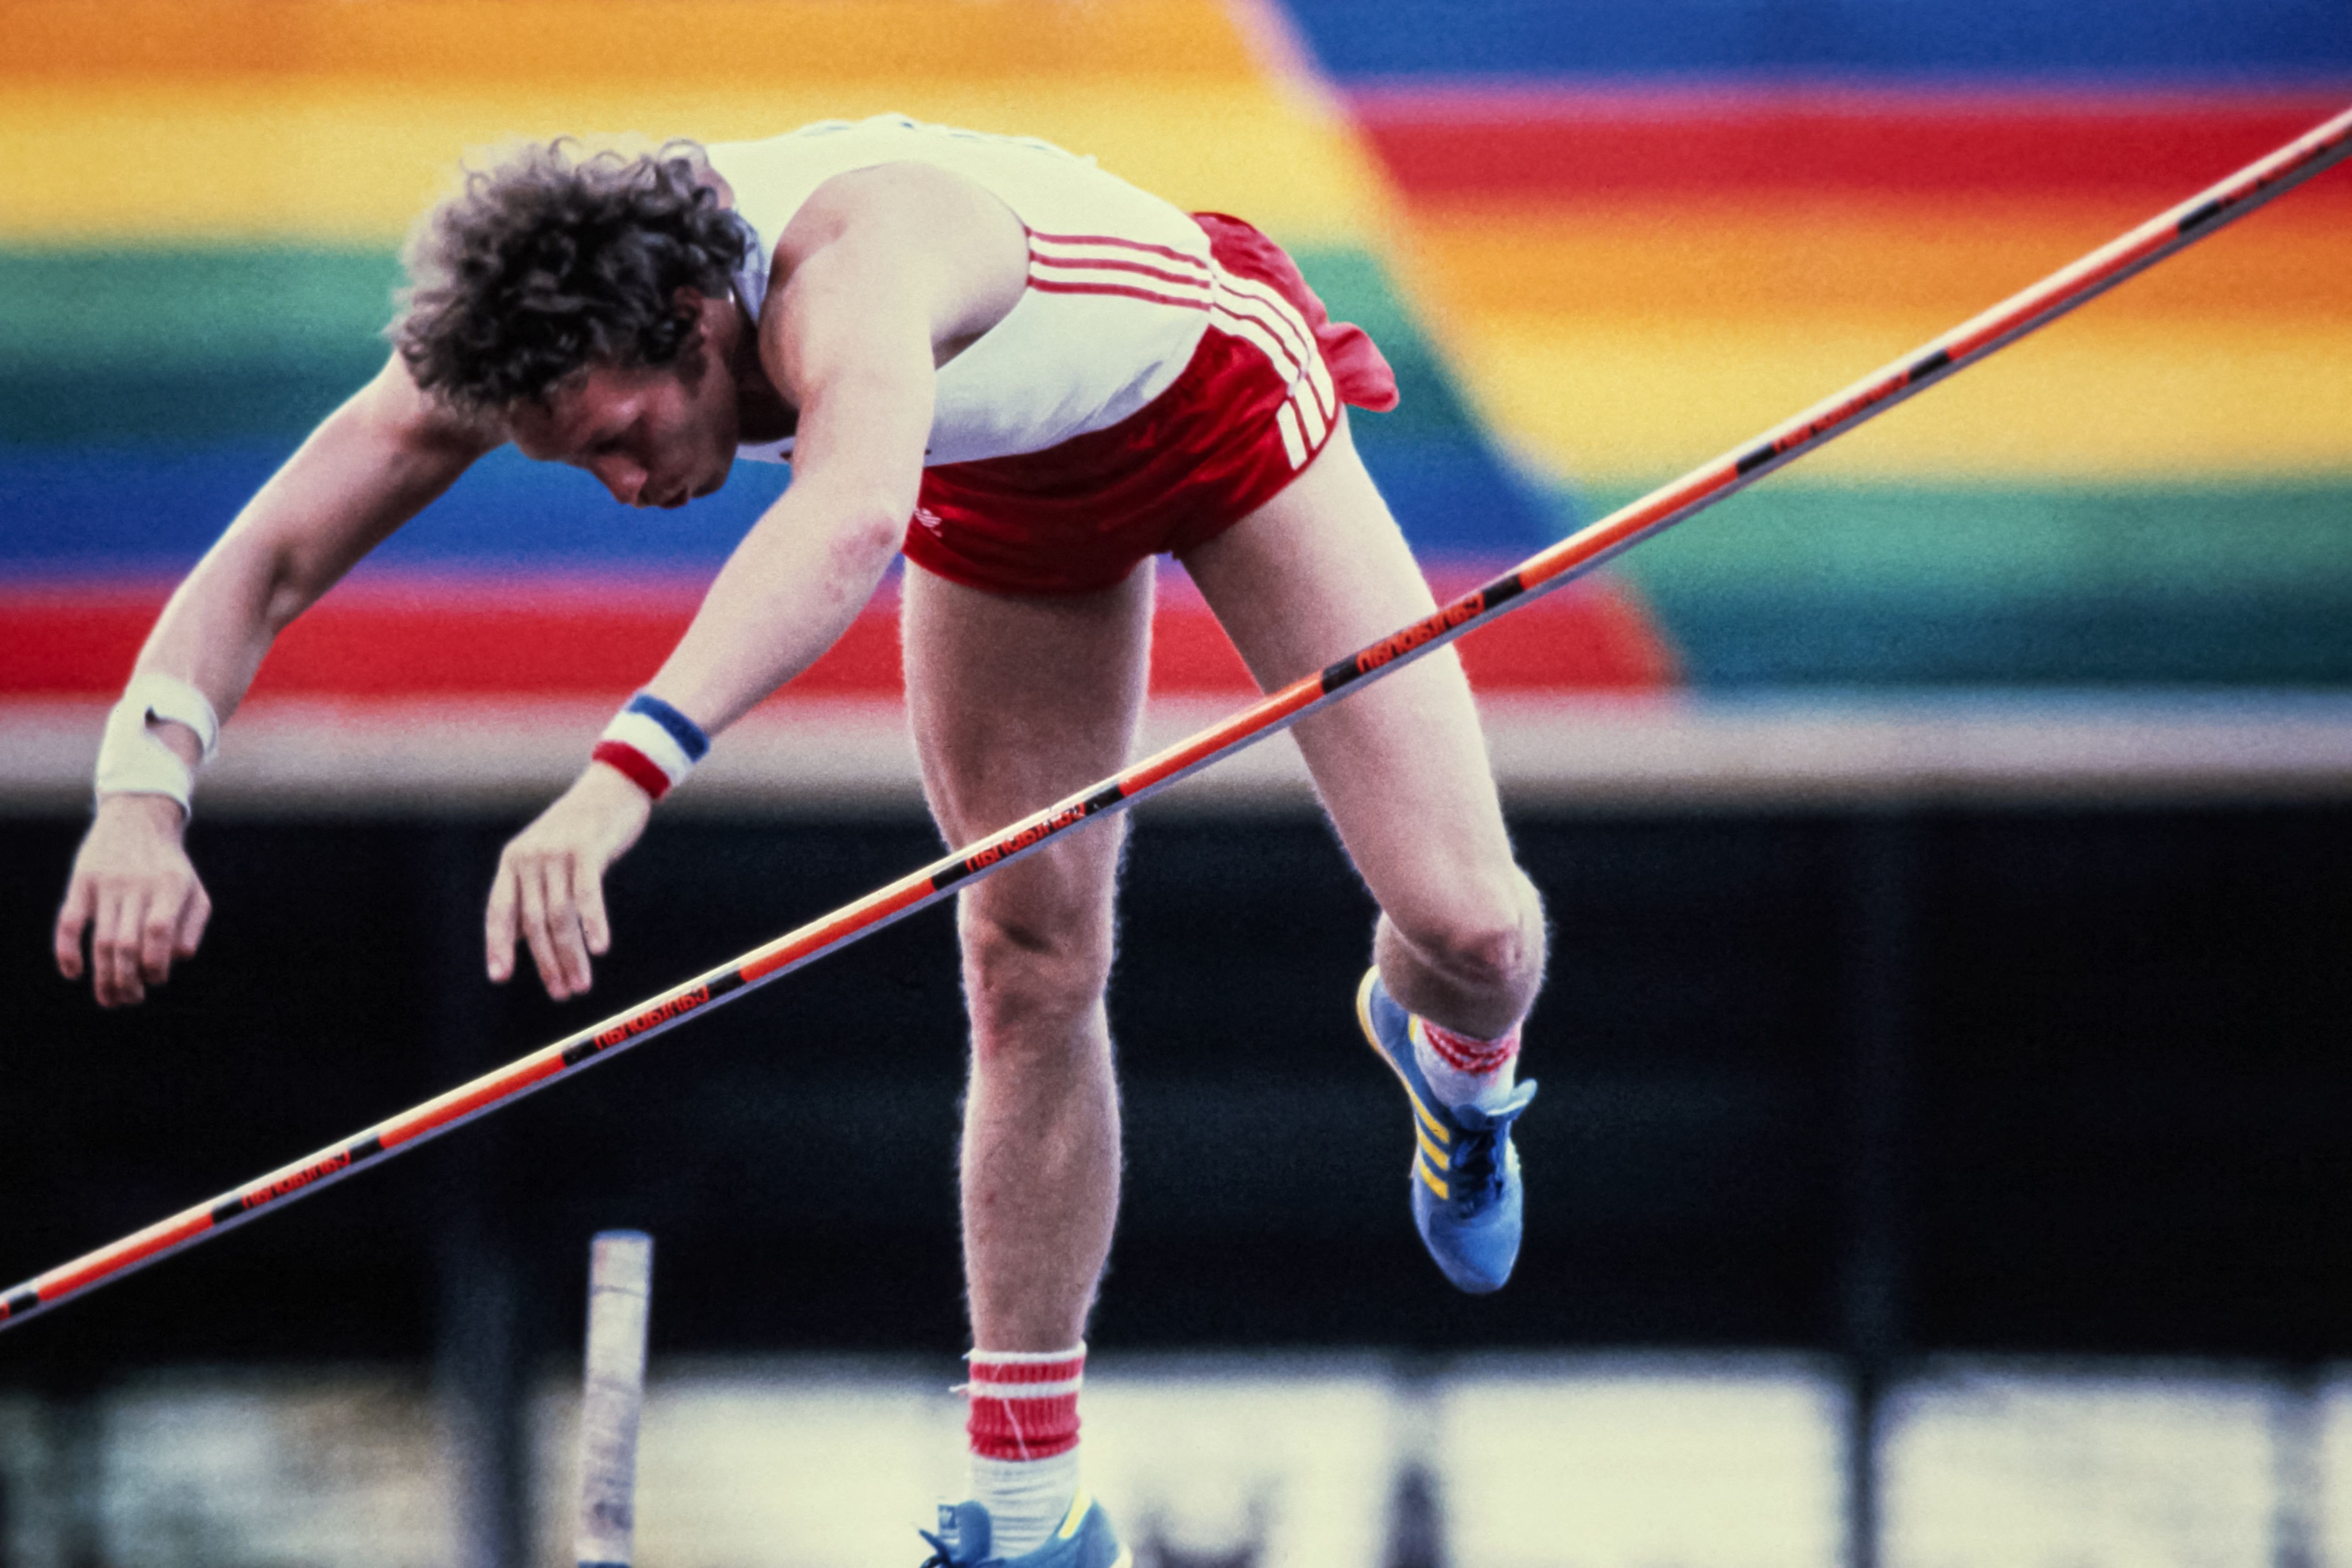 L'atleta polacco Wladyslaw Kozakiewicz durante la finale del salto con l'asta, in cui ha battuto il record mondiale con 5,80 metri